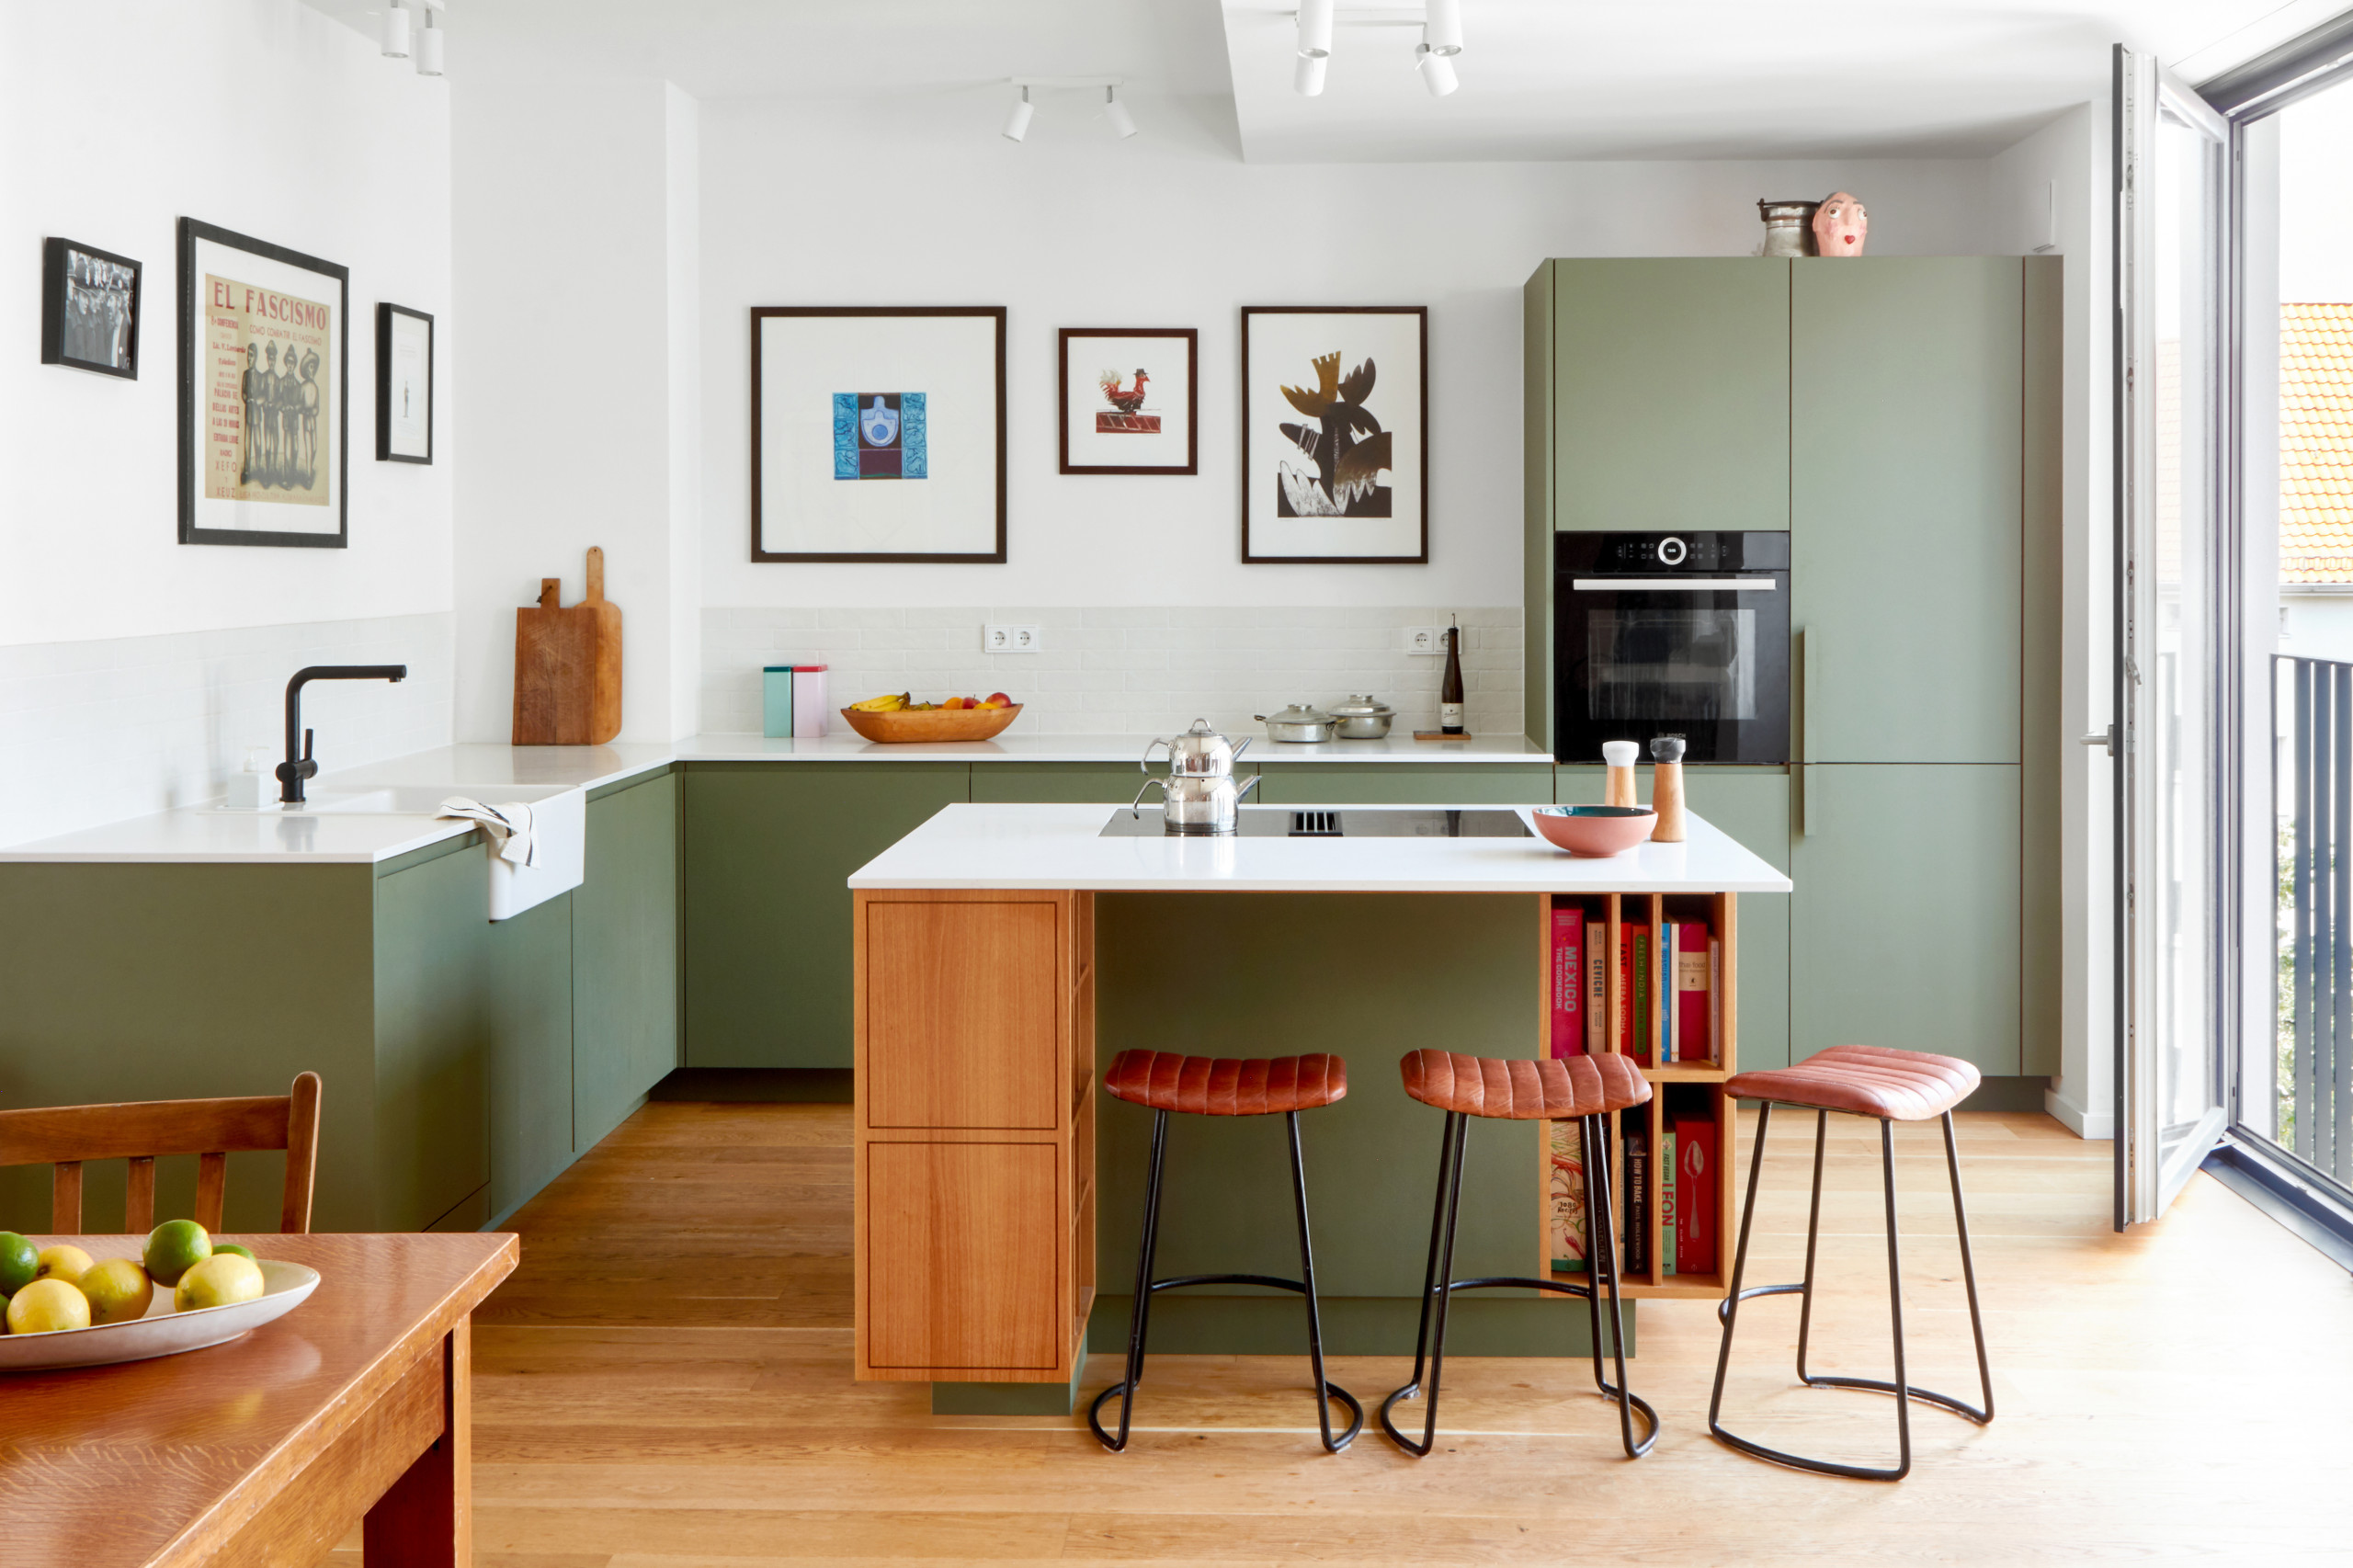 Eine grüne küche mit tisch und kühlschrank.